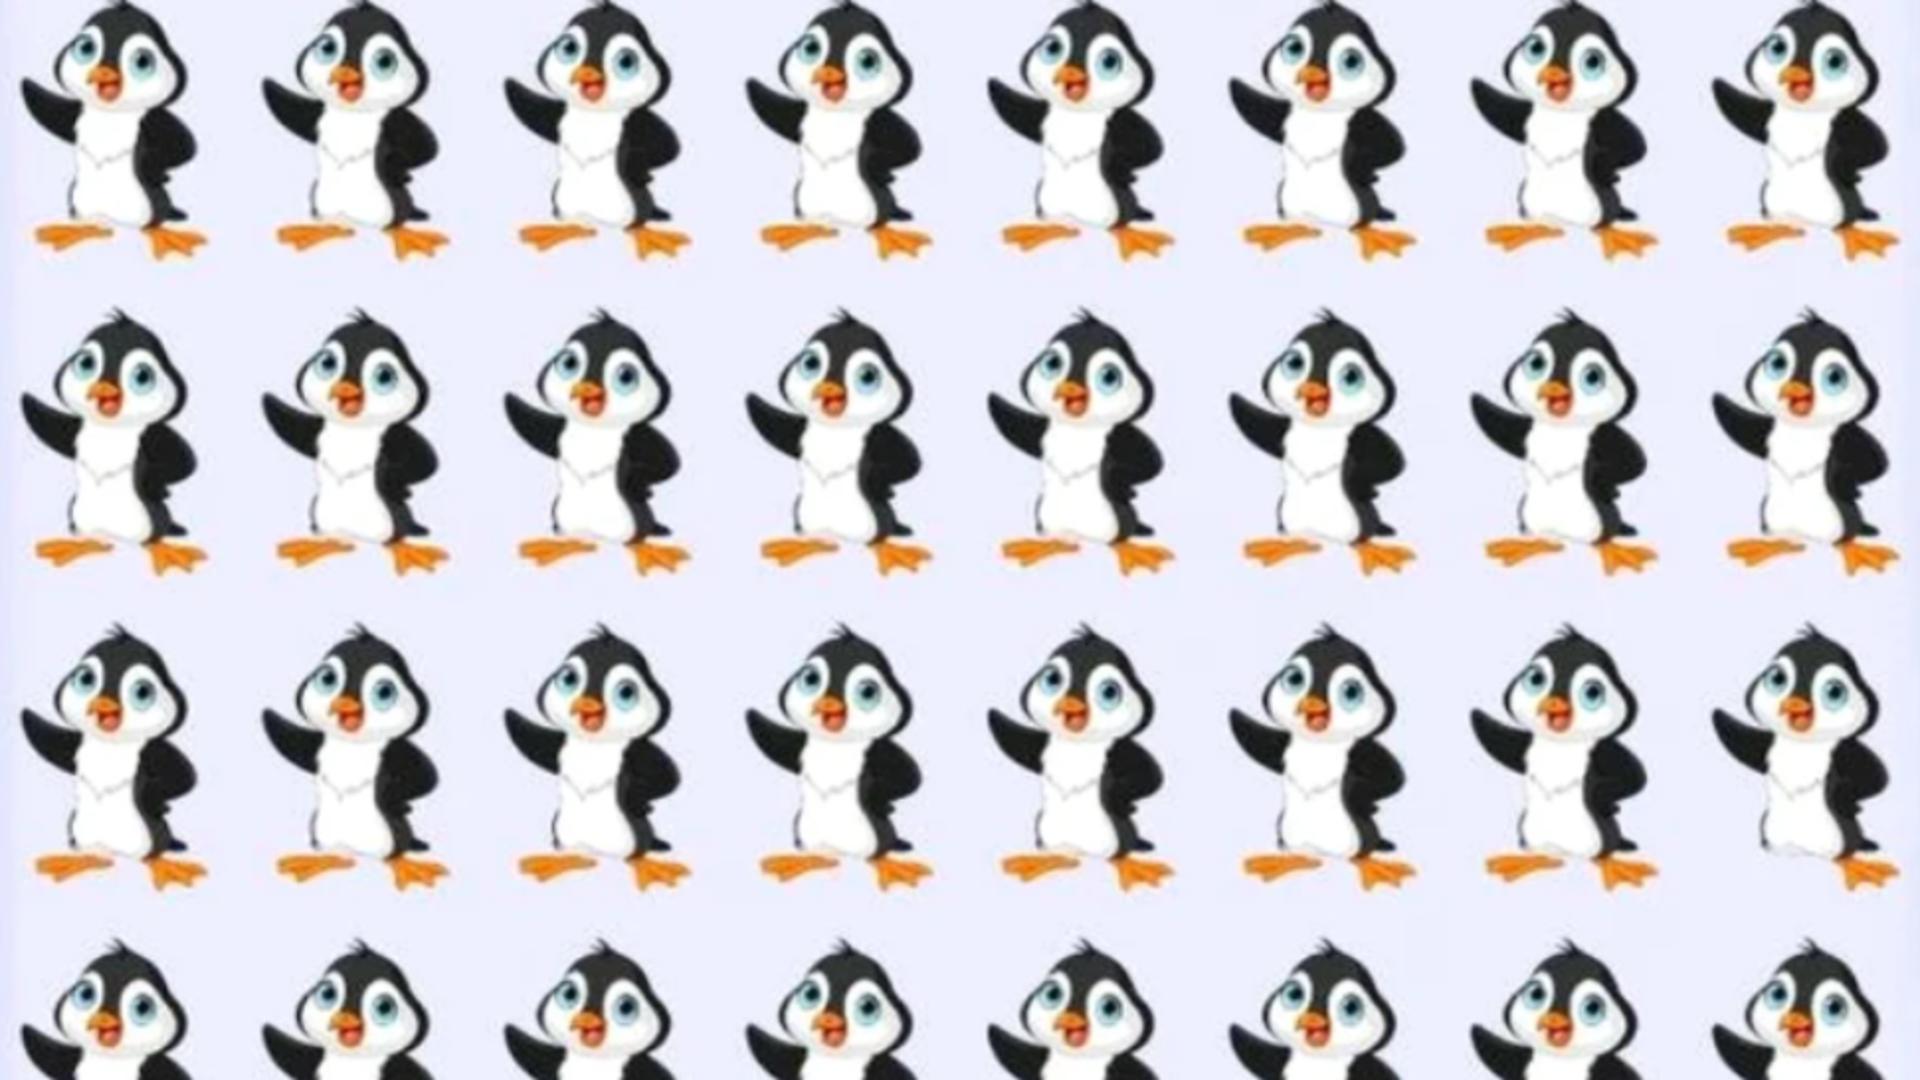 Poți să găsești pinguinul diferit din imagine în numai 11 secunde? Doar cei cu un IQ peste medie reușesc această performanță